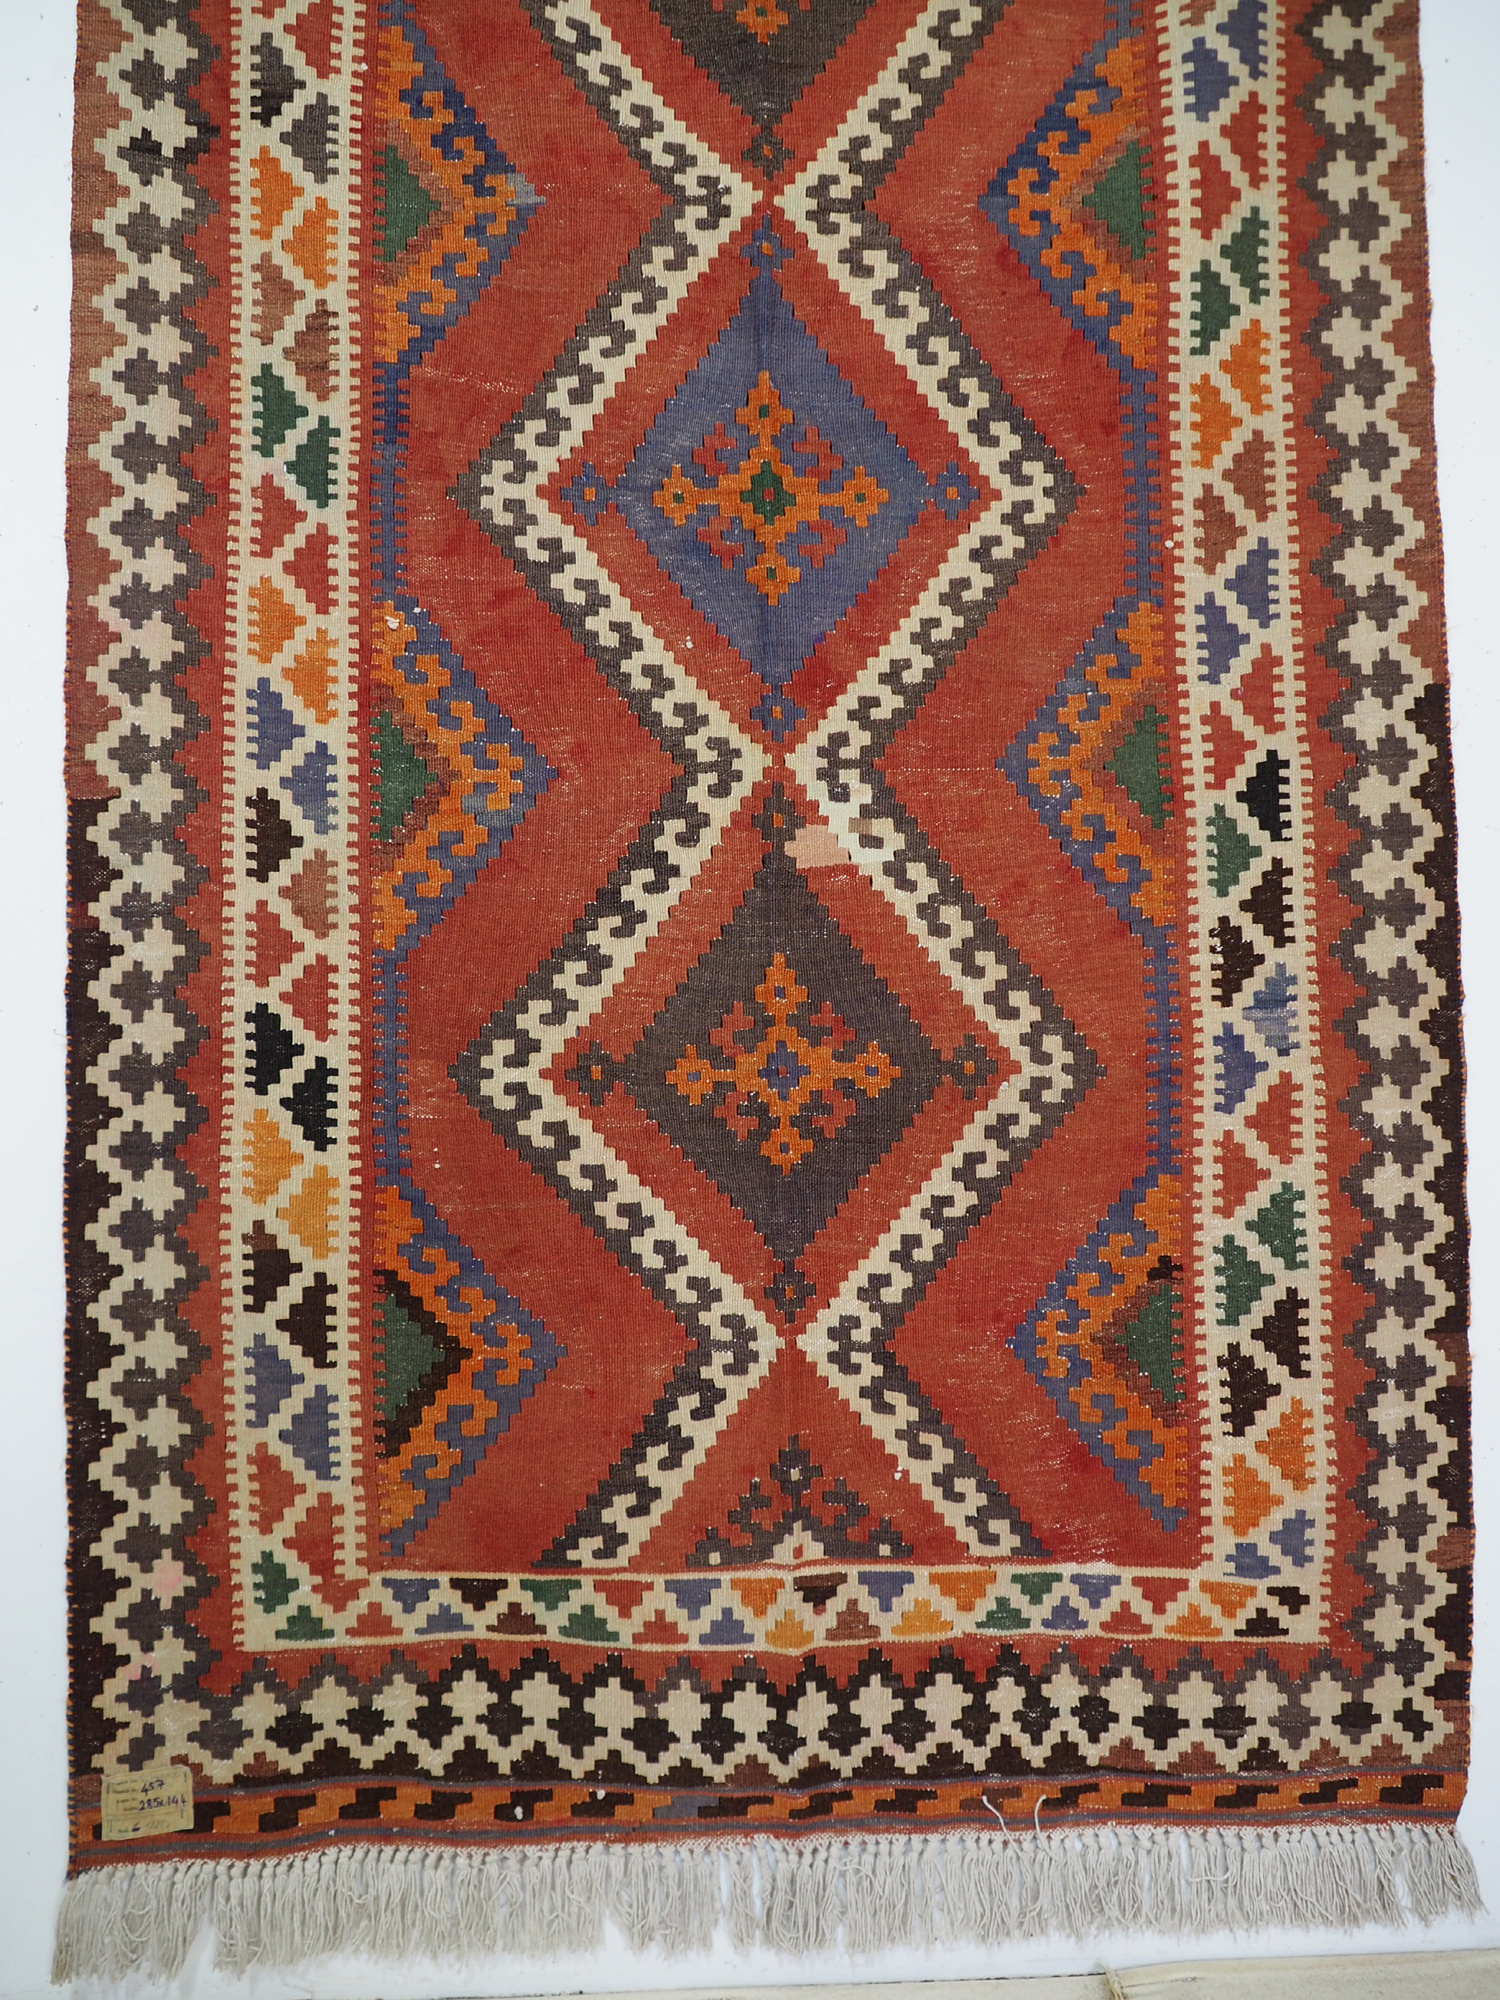 285x144 cm antike handgewebte orient kazak Teppich Nomaden kaukasische kelim No:457